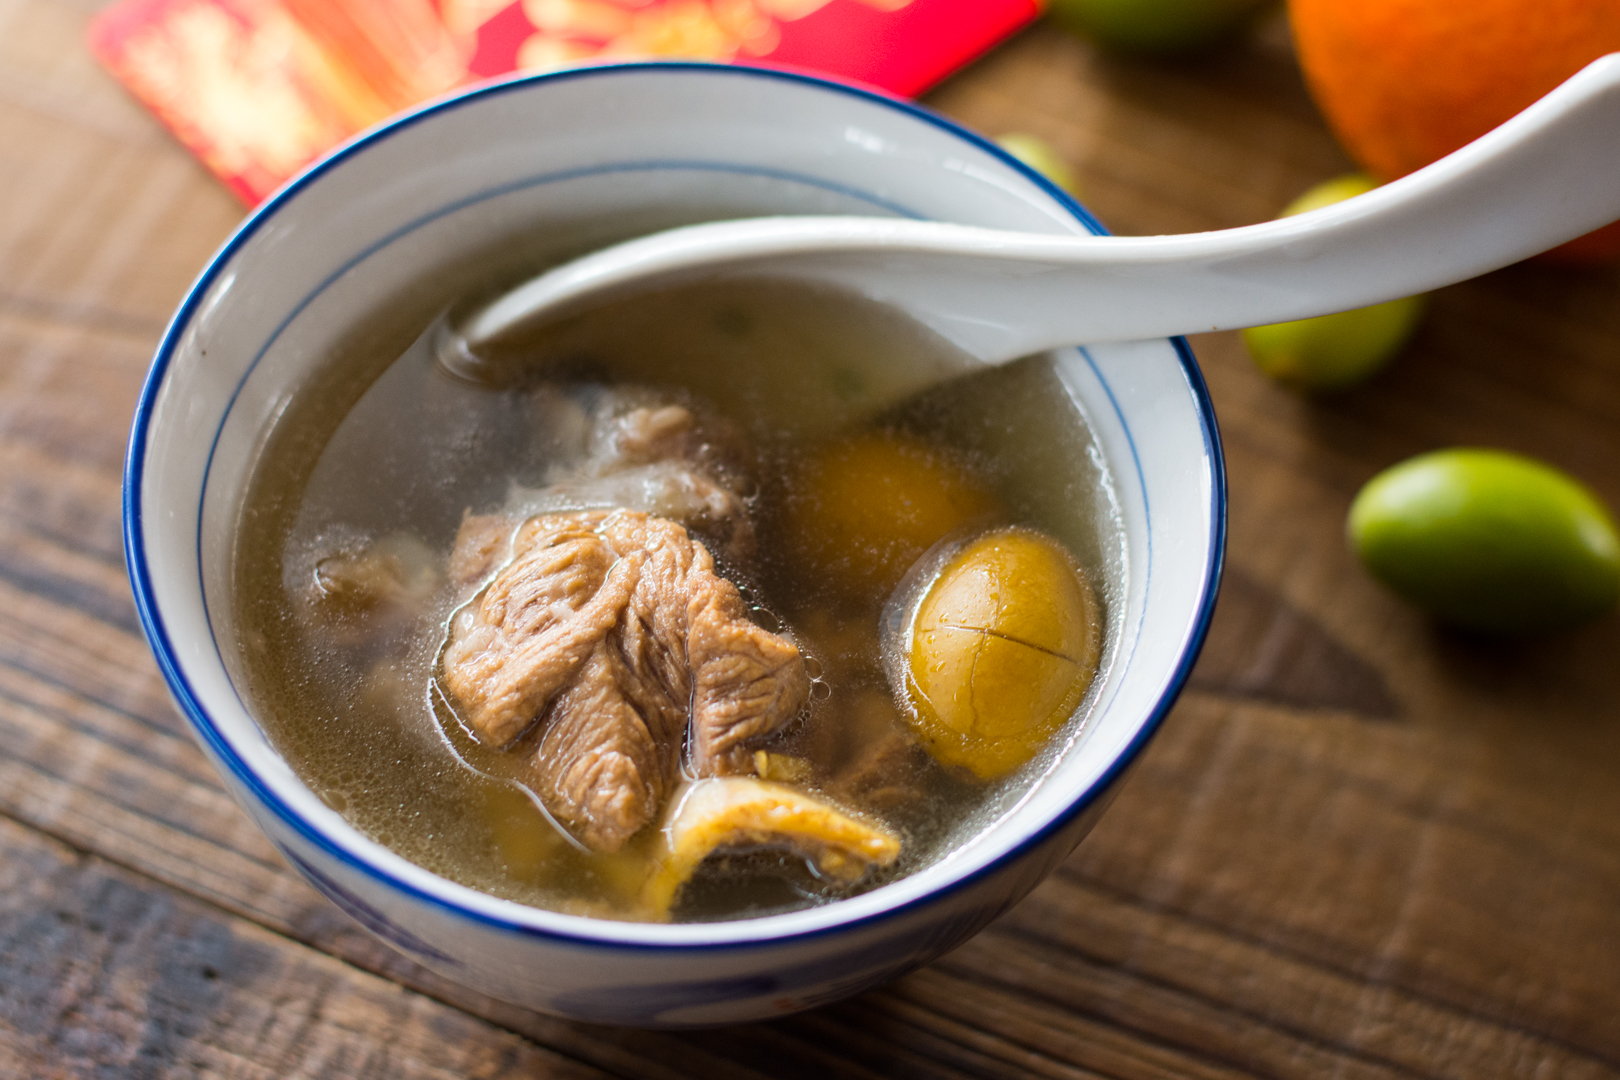 这一例炖汤，独具潮汕特色~~青橄榄炖汤的做法